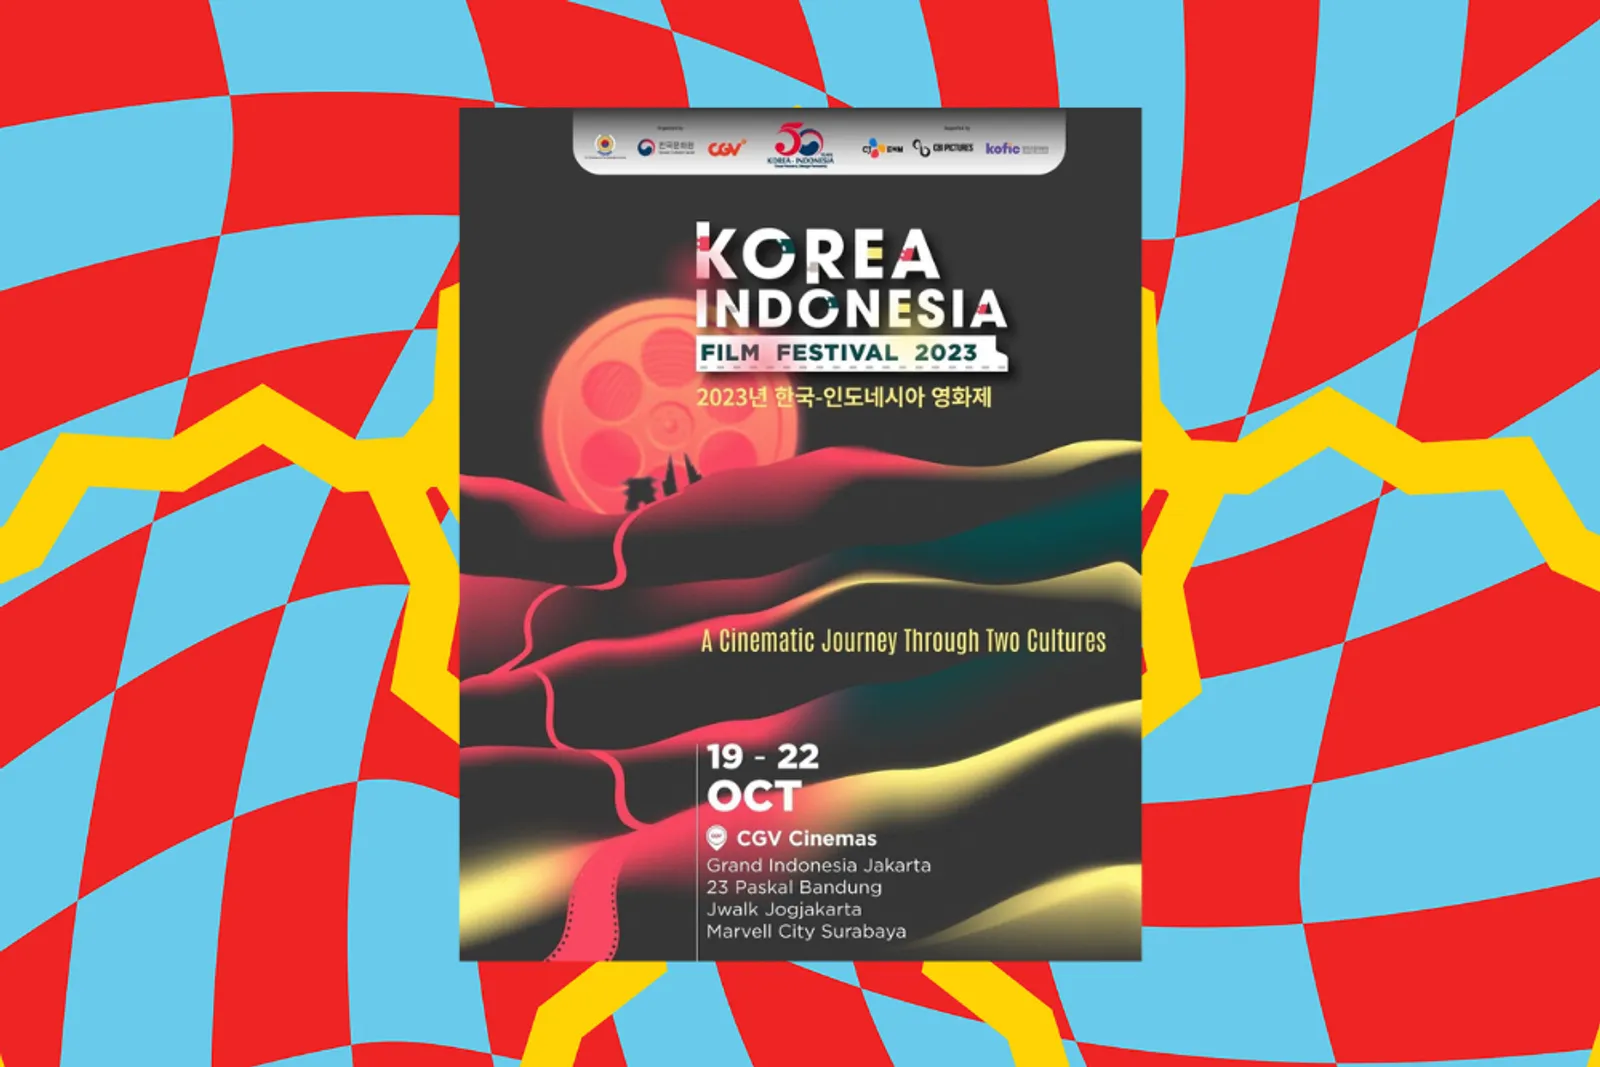 Korea Indonesia Film Festival 2023: Jadwal & Cara Beli Tiket Rp15 Ribu